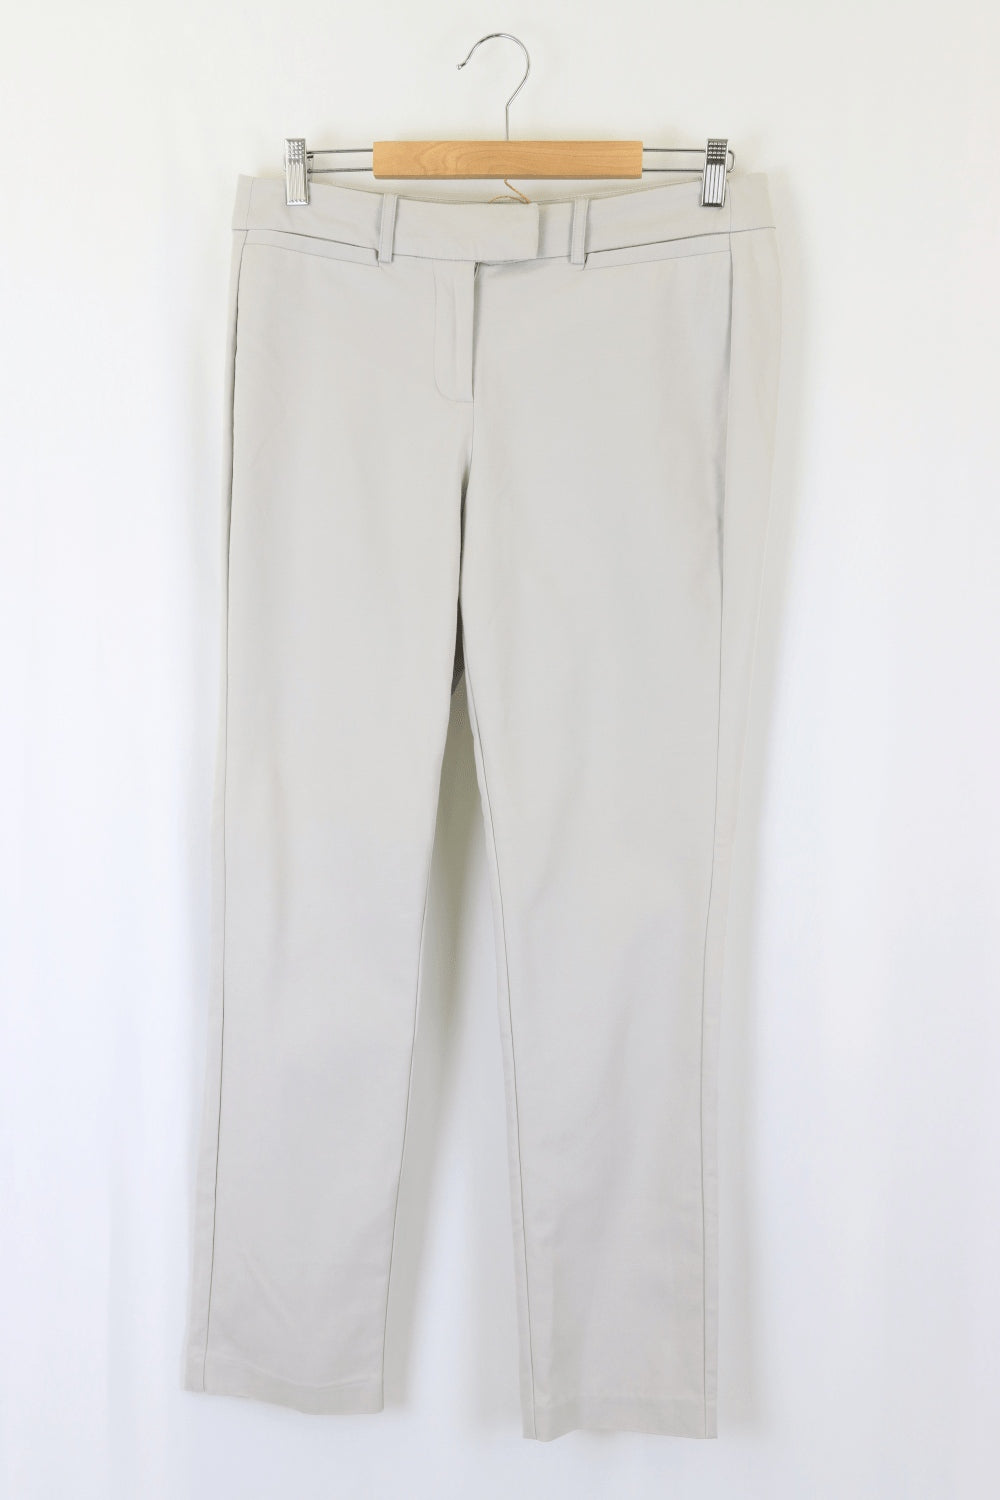 Diana Ferrari i Grey Pants 10